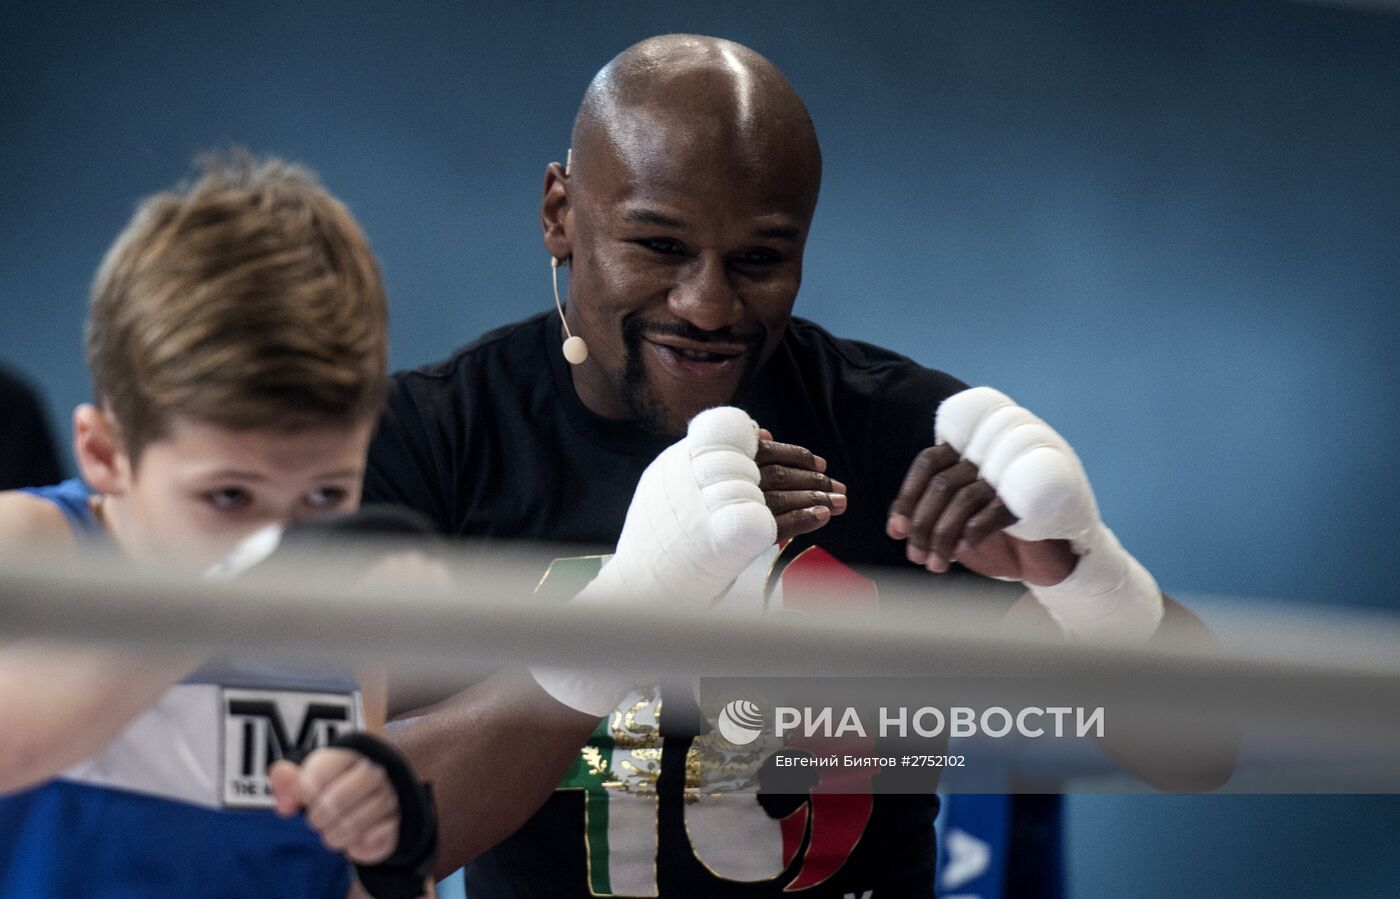 Боксер Флойд Мейвезер провел массовую открытую тренировку в Москве